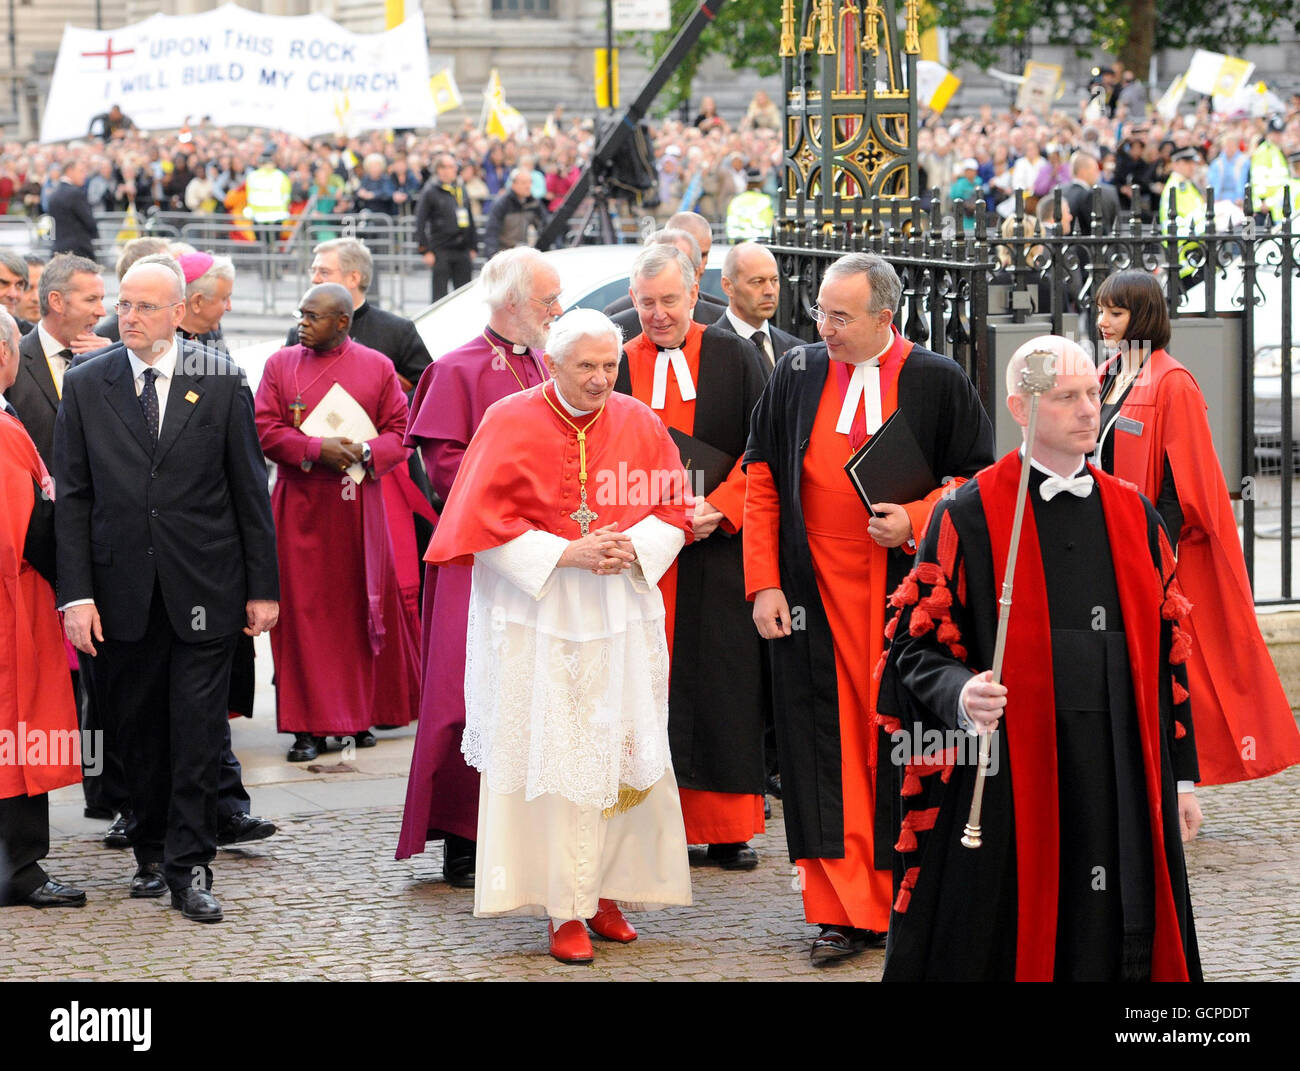 Le pape Benoît XVI arrive à l'abbaye de Westminster, à Londres, où il est accueilli par le doyen de Westminster, le révérend droit John Hall (à droite). Banque D'Images